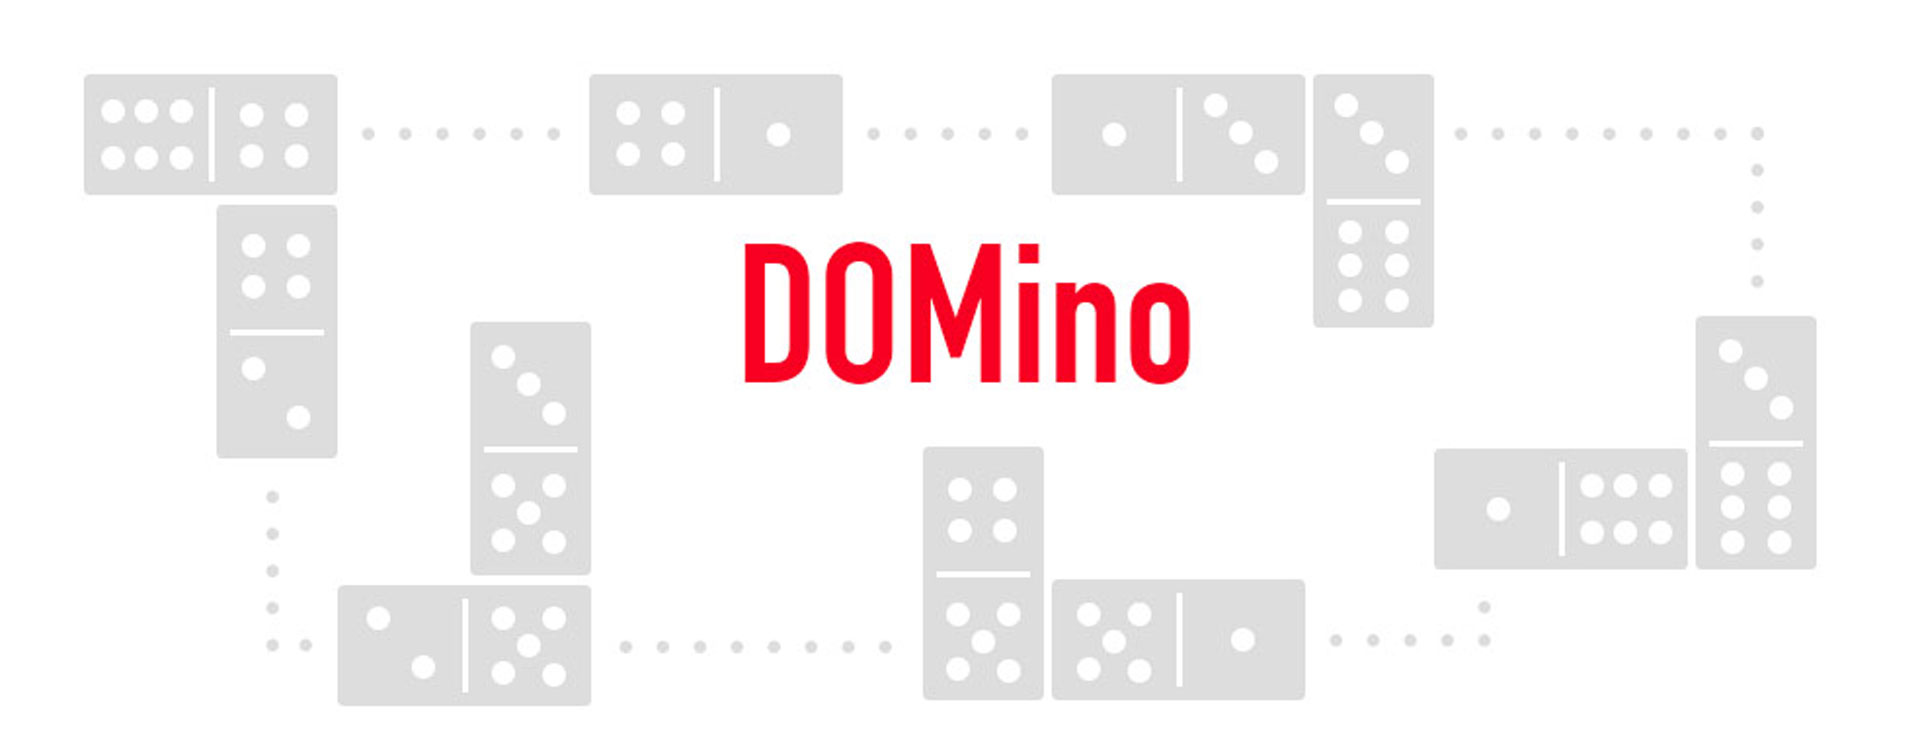 Configuration Domino